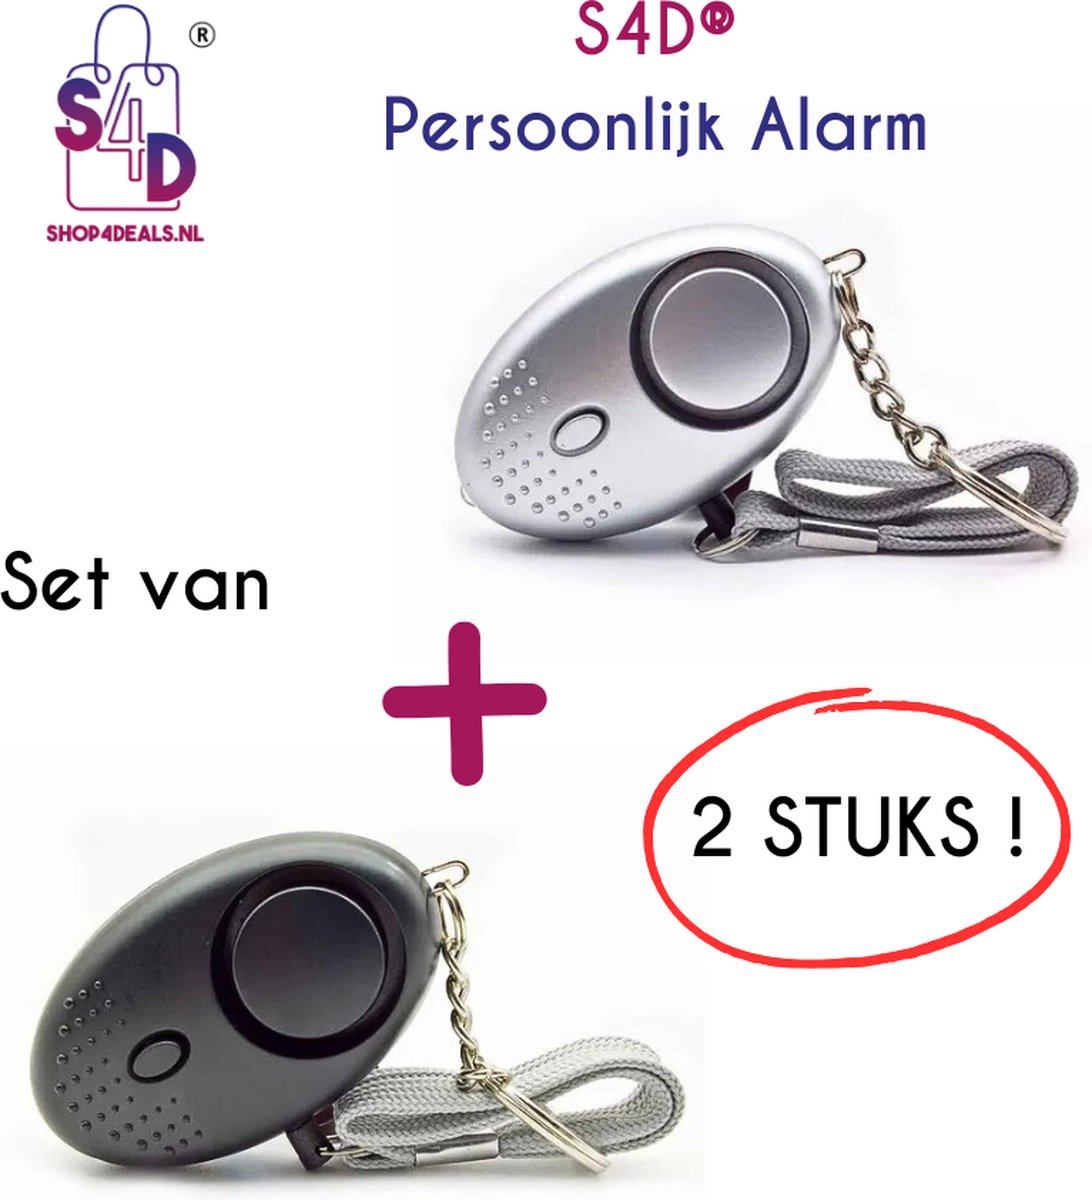 S4D® - Persoonlijk Zakalarm - Paniekalarm - Senioren Alarm - Veiligheid Alarm - Persoonlijke Alarmknop - Zelfverdediging Sirene - 130 Decibel - Incl. Batterijen - Met LED Zaklamp - Set Van 2 Stuks - Zwart + Grijs